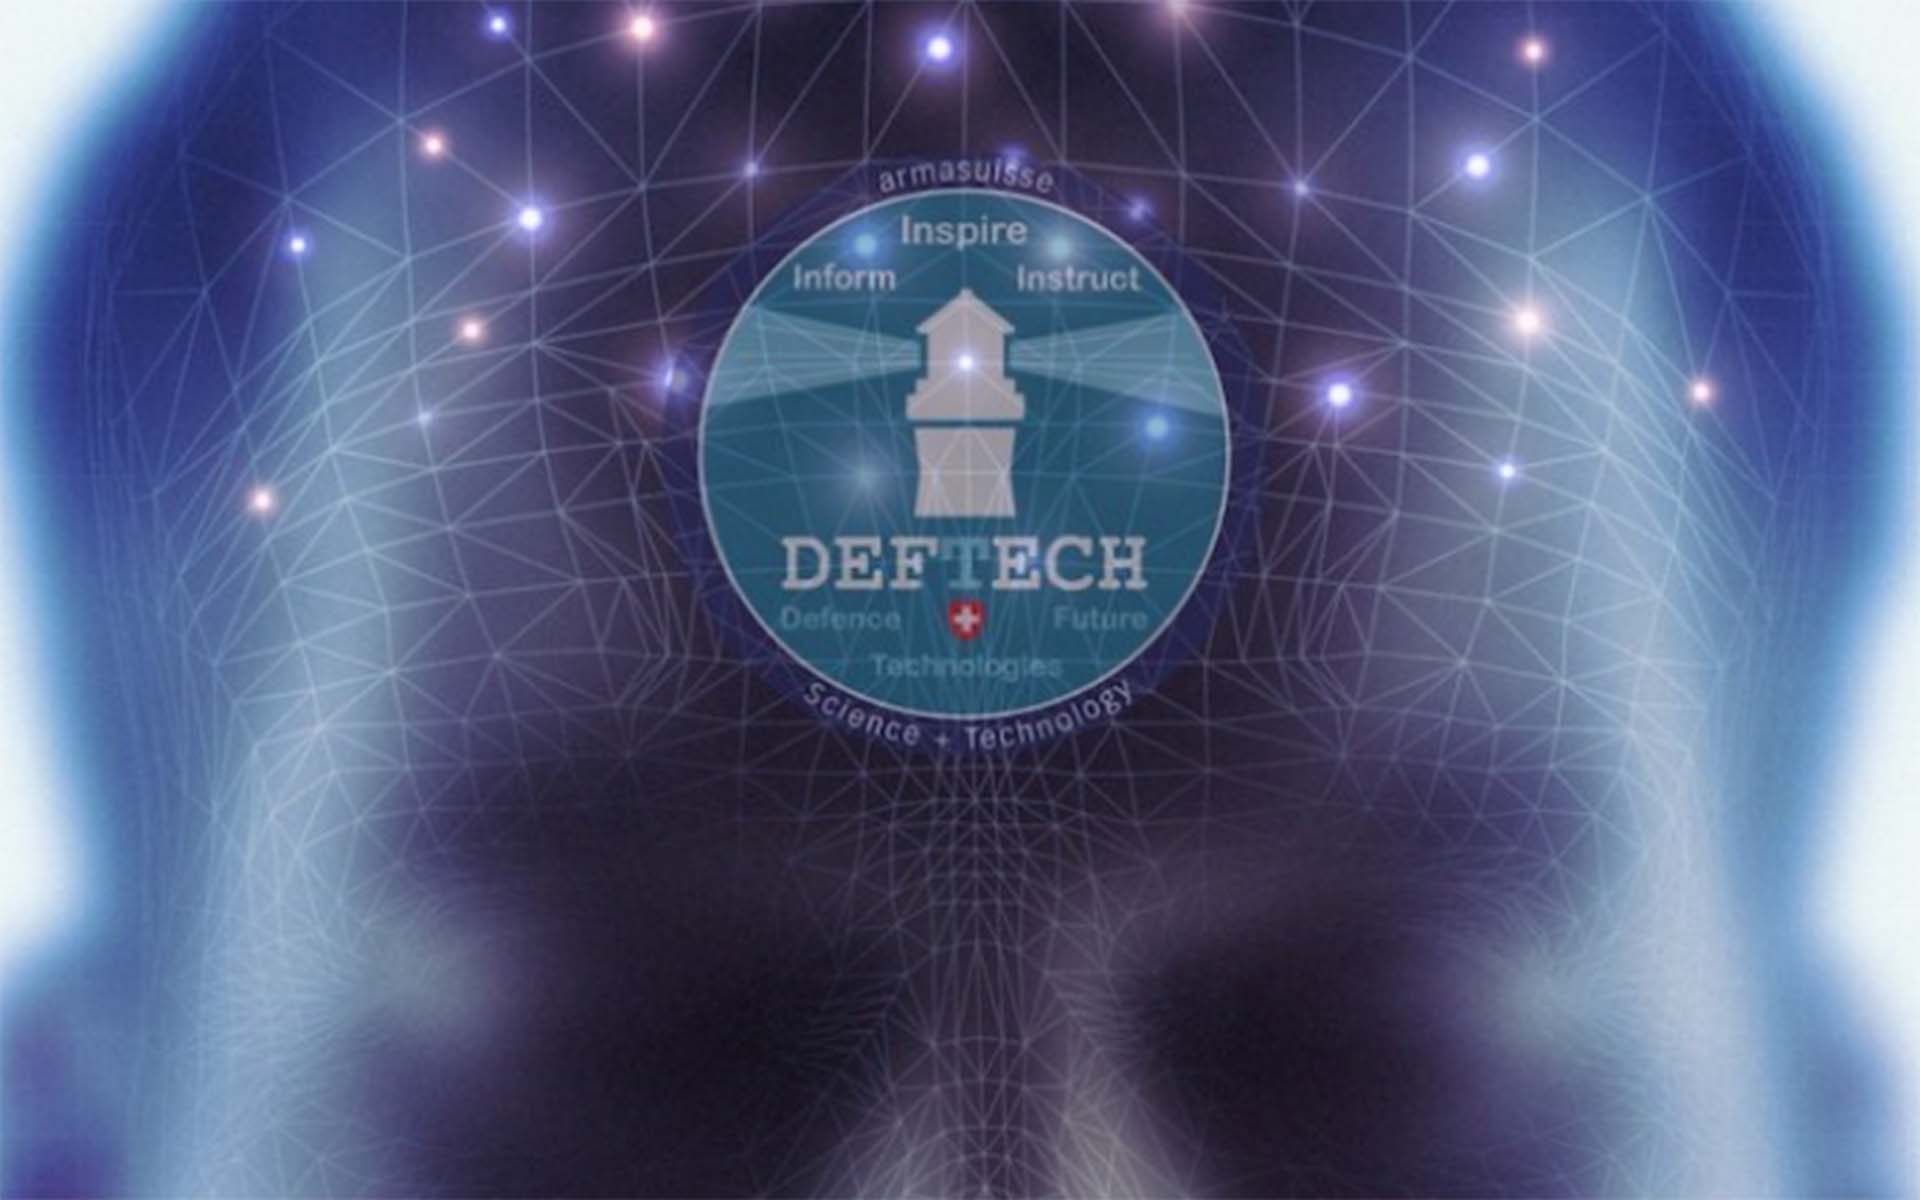 Das Deftech Logo: Ein Leuchturm sendet Lichtsignale in zwei Richtungen